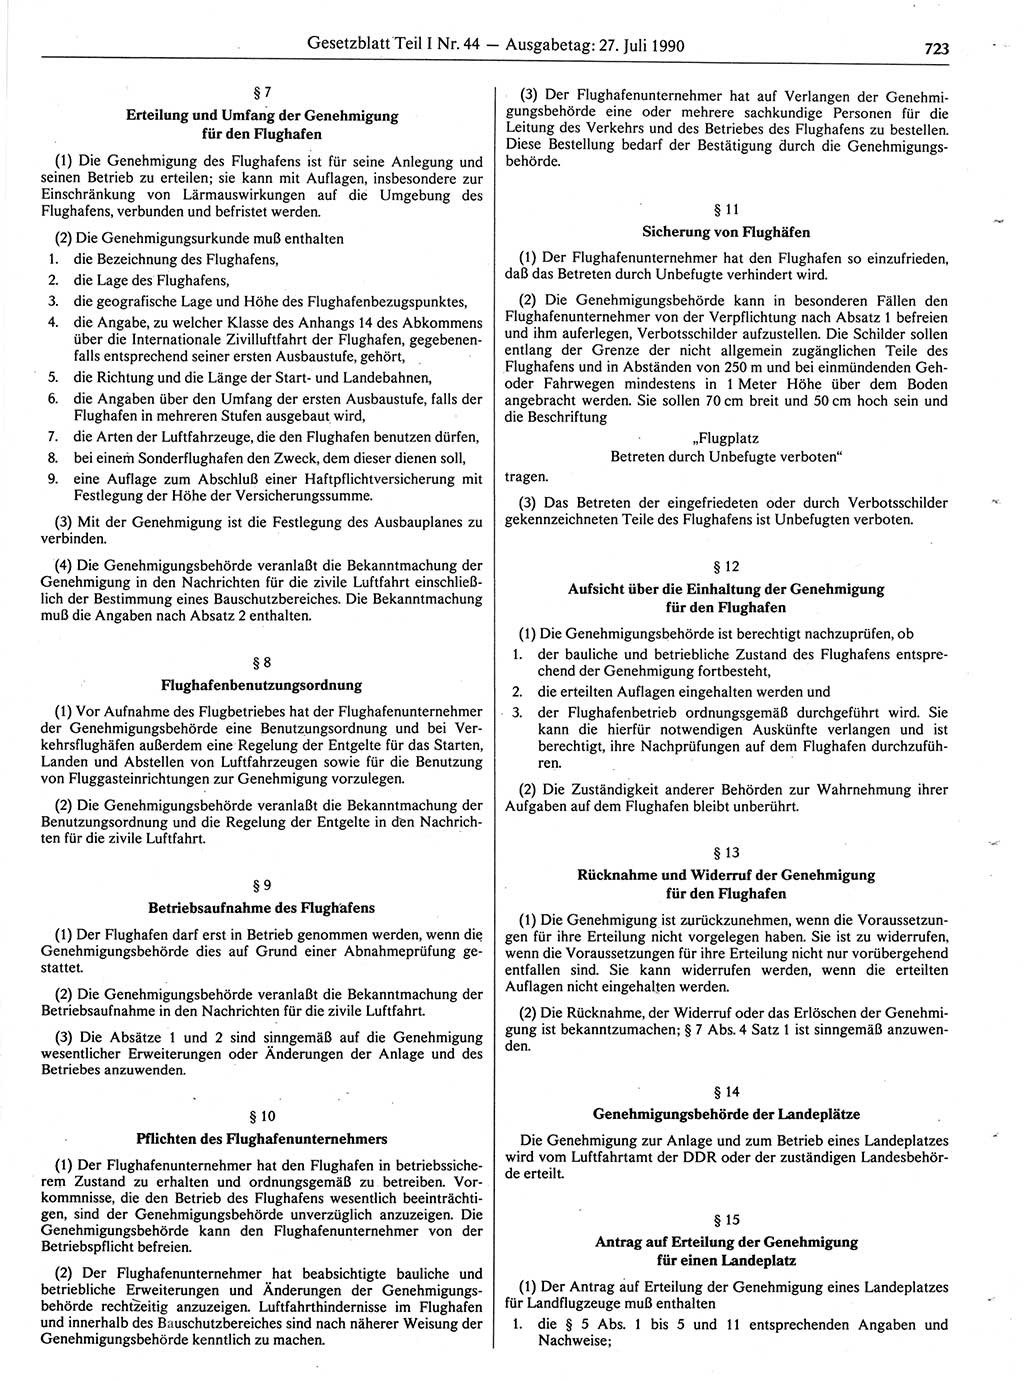 Gesetzblatt (GBl.) der Deutschen Demokratischen Republik (DDR) Teil Ⅰ 1990, Seite 723 (GBl. DDR Ⅰ 1990, S. 723)